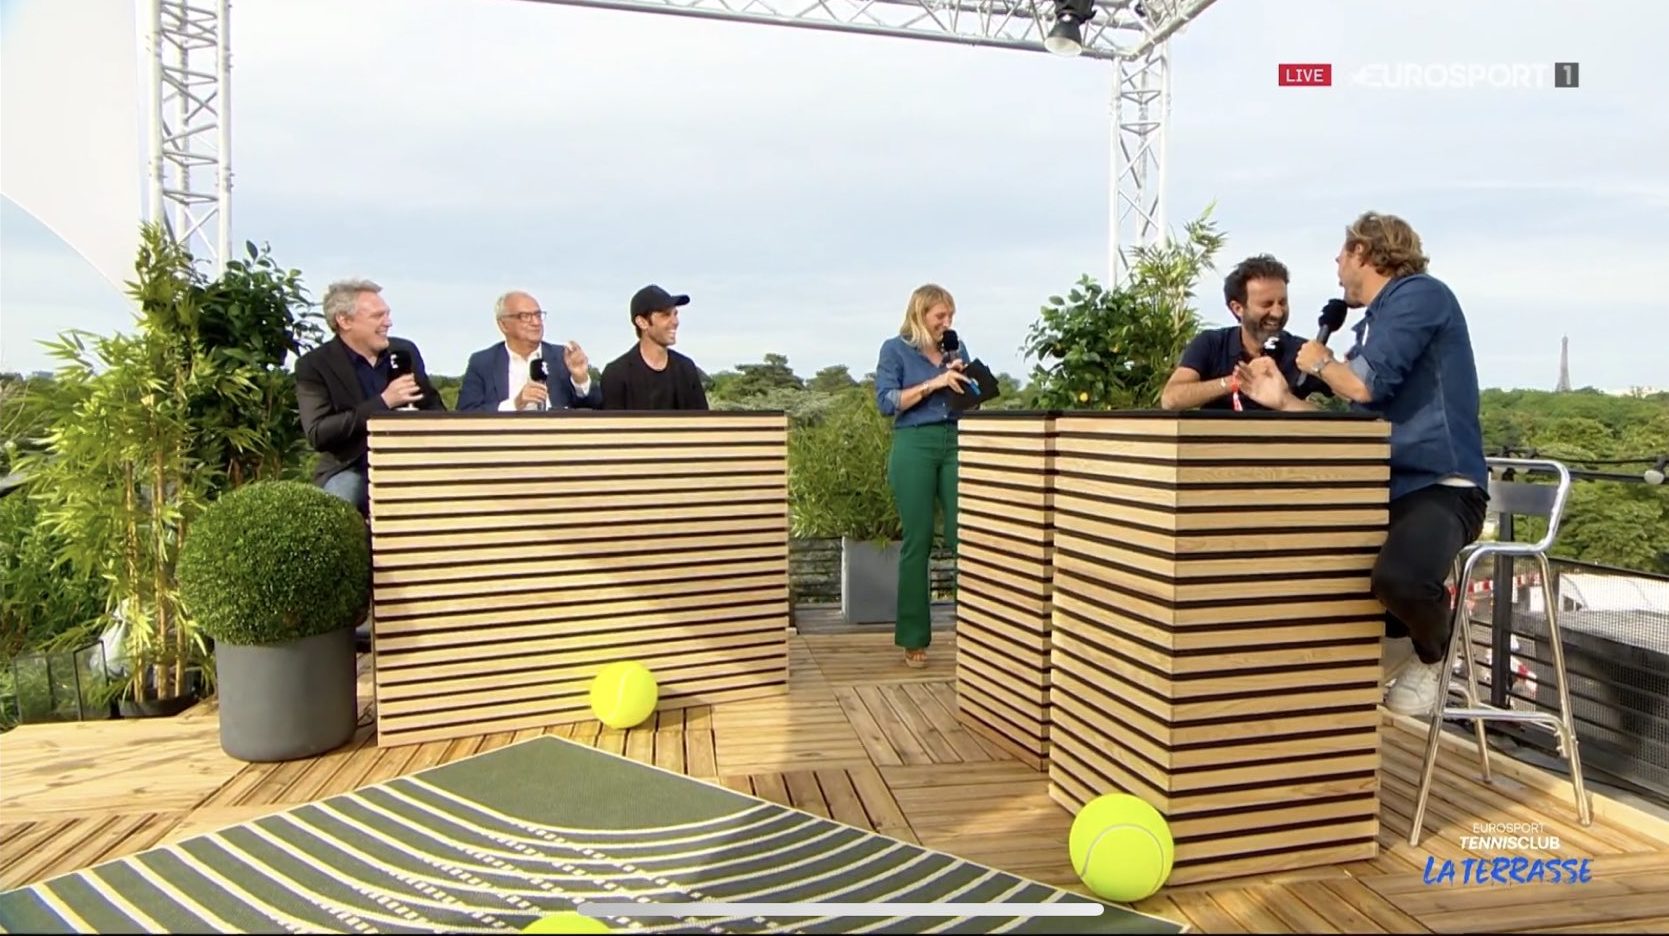 Eurosport France sinvite à Roland-Garros avec une émission quotidienne, sans images du tournoi